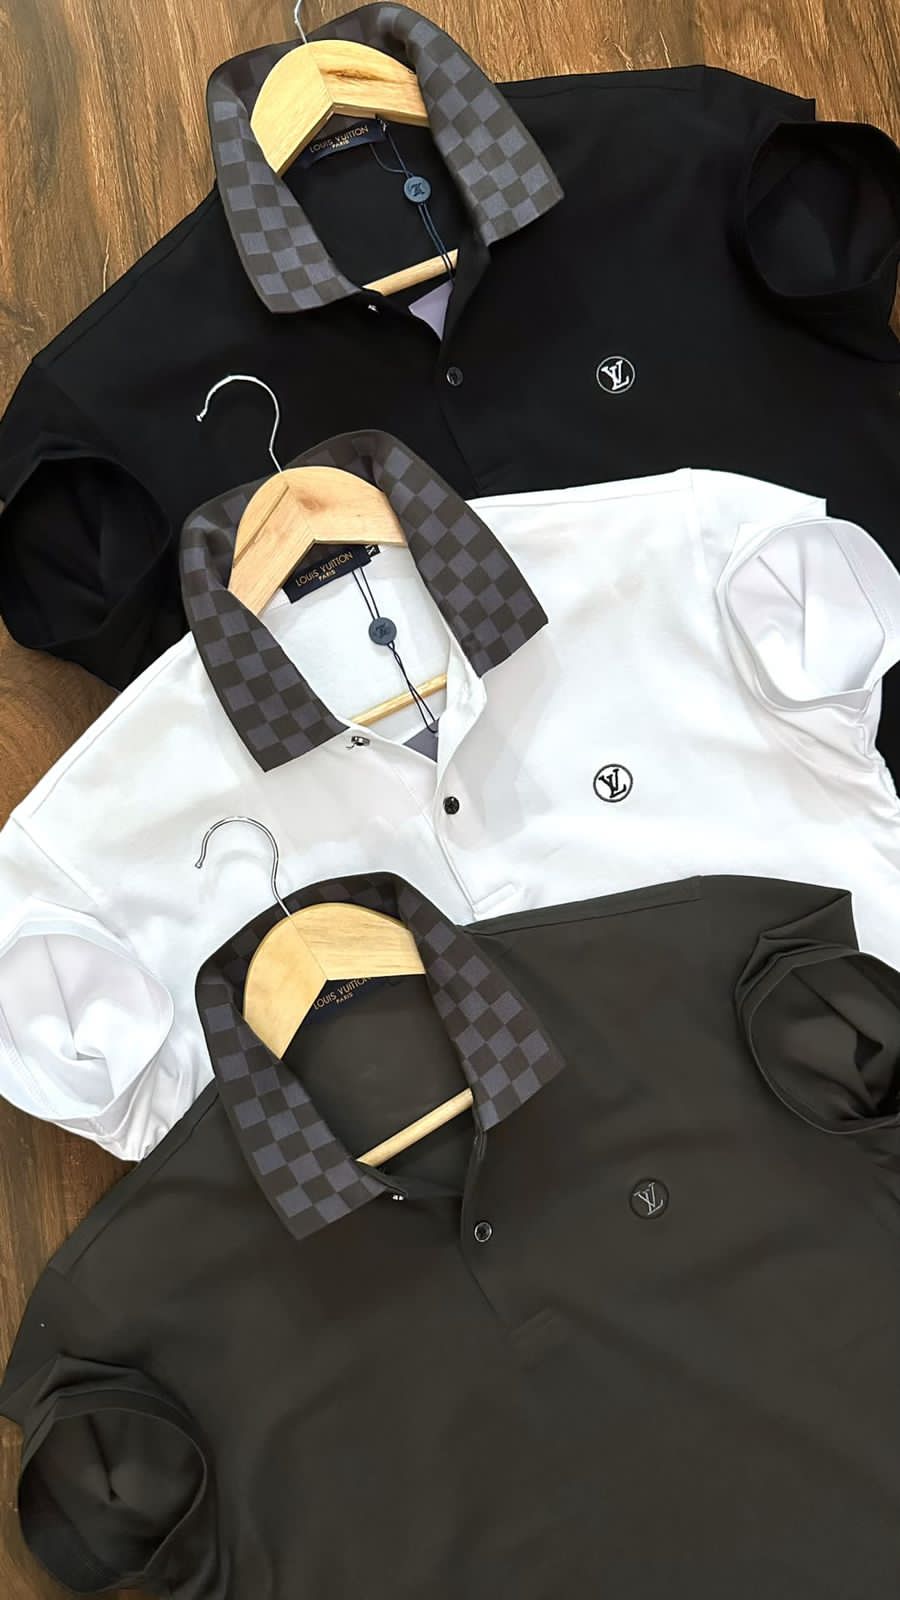 Louis Vuitton Men's Black & White Cotton Classic Damier Shirt